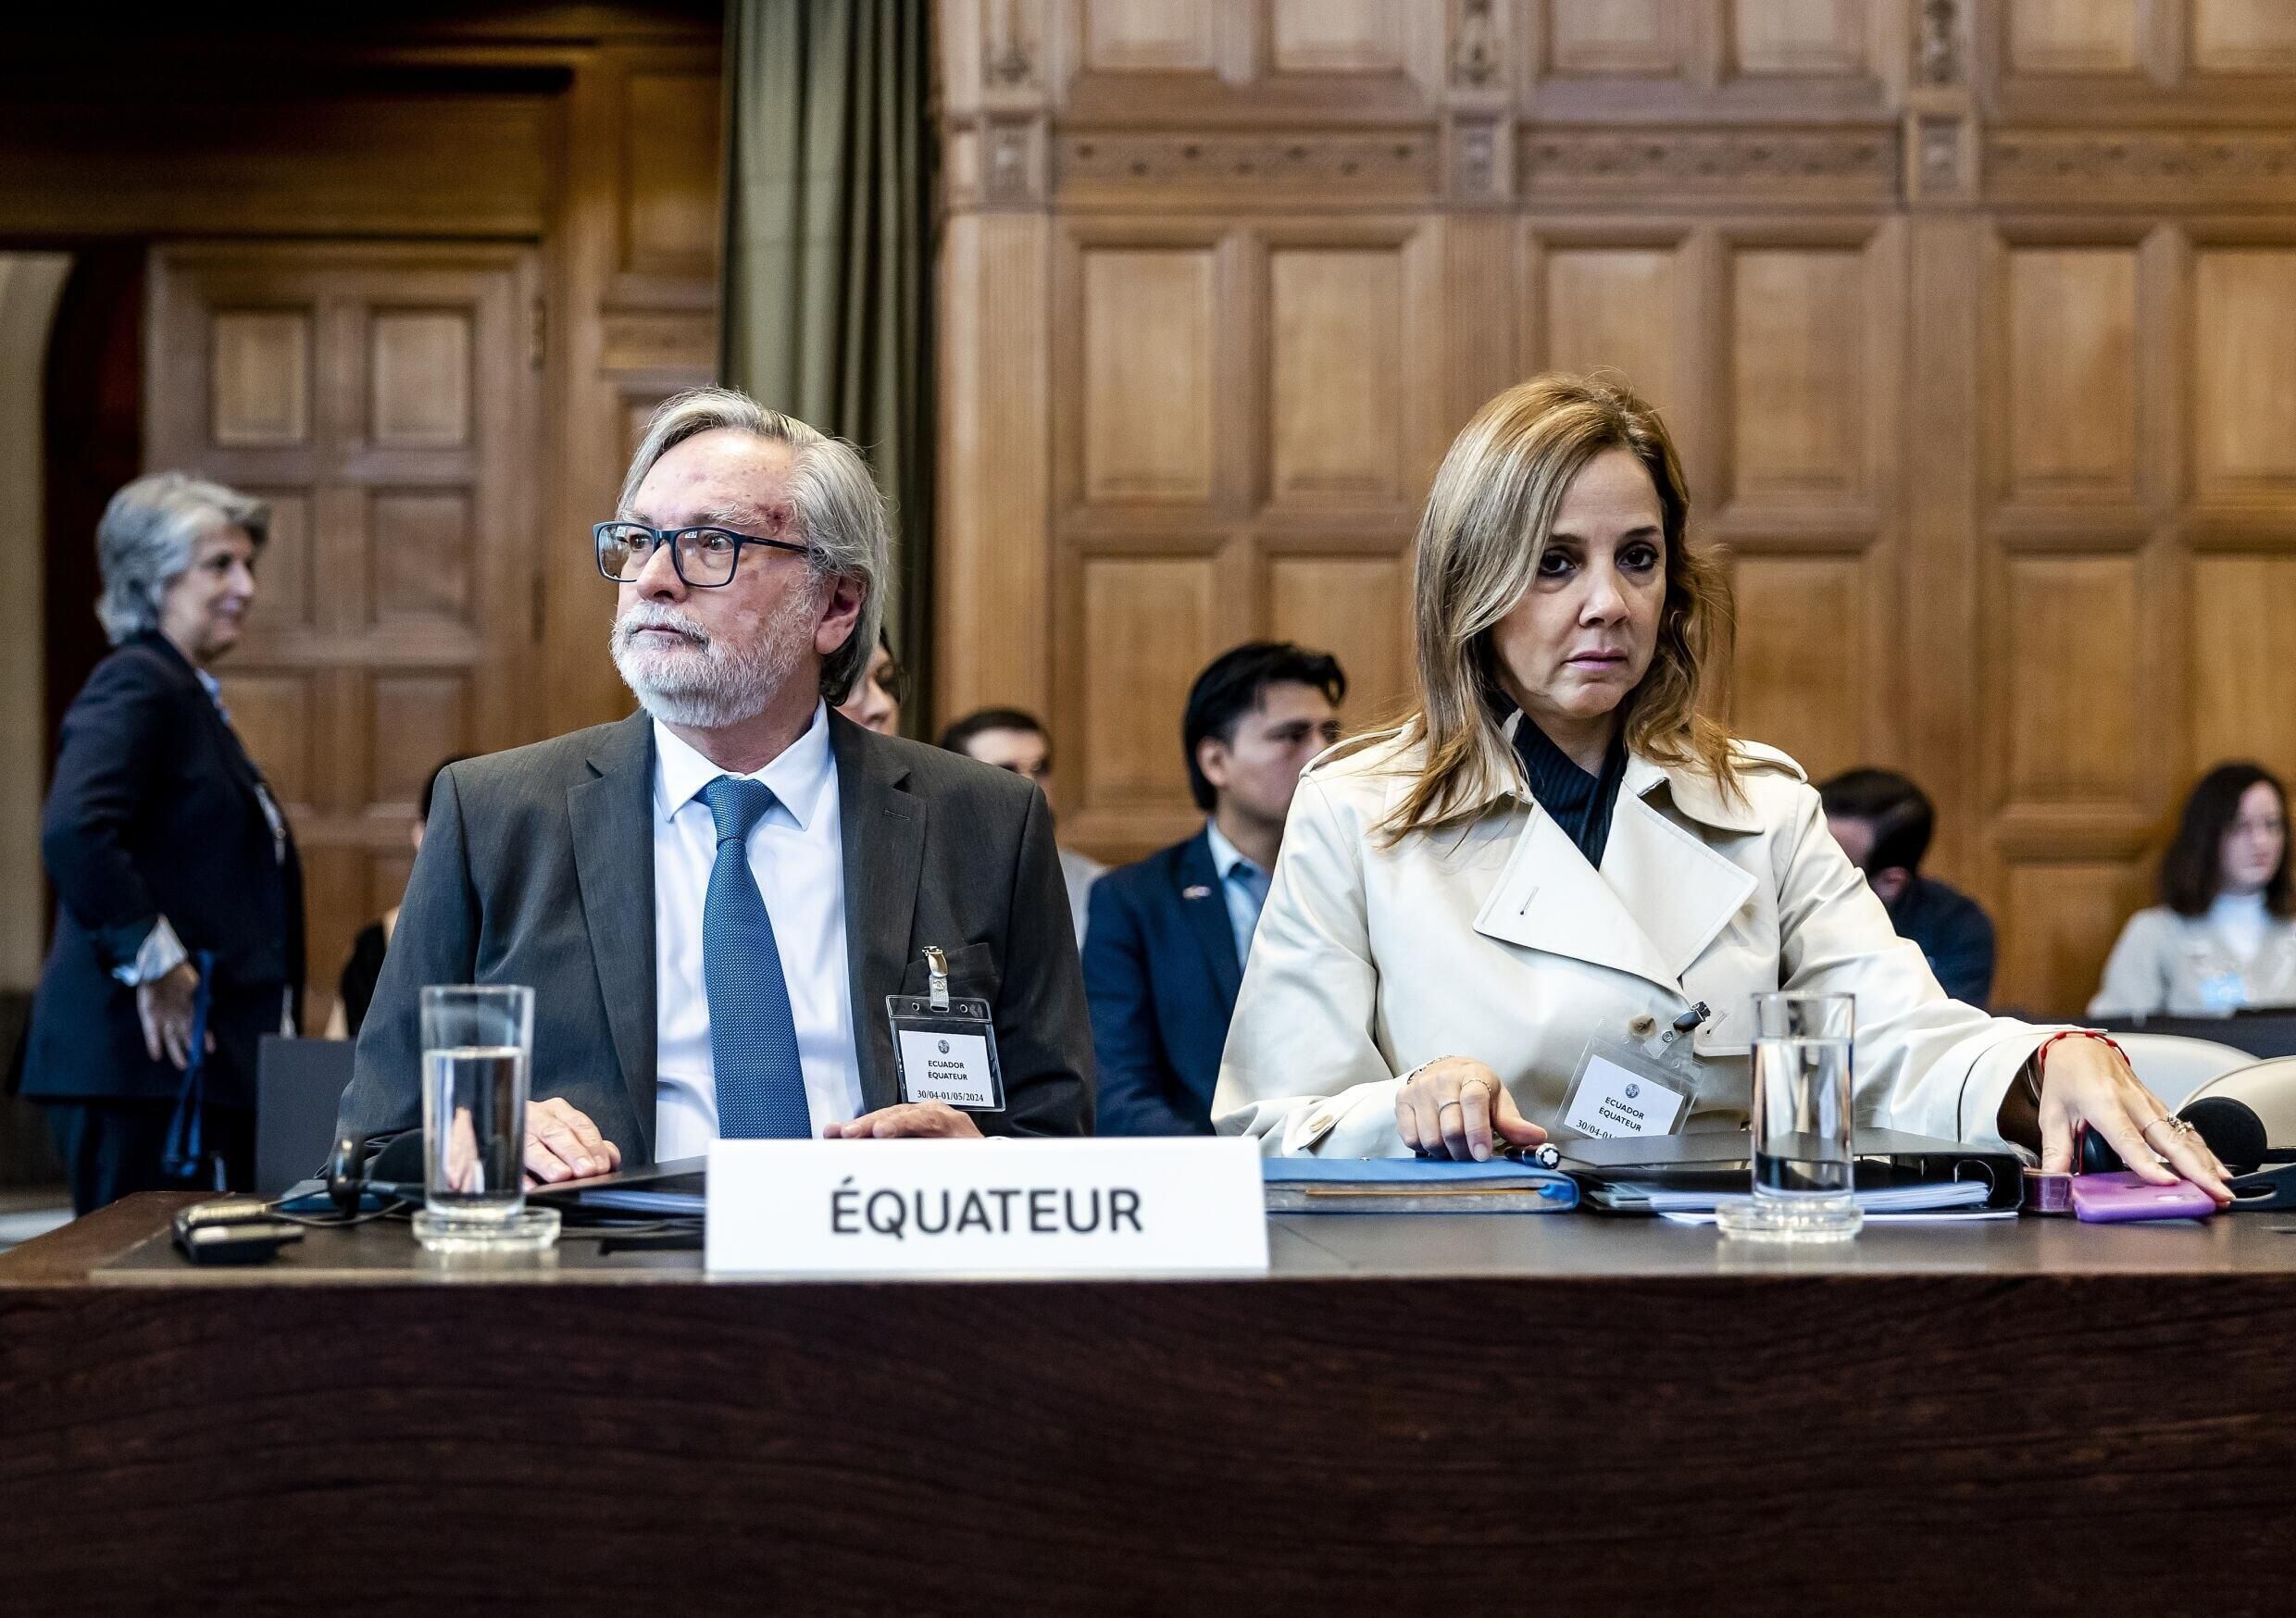 El embajador ecuatoriano en Países Bajos, Andrés Terán, y la directora de Asuntos Internacionales y Arbitraje, Ana María Larrea, son parte de la representación legal del país sudamericano ante la CIJ en el caso de la invasión a la embajada mexicana. Foto: Remko de Waal/Anp/AFP